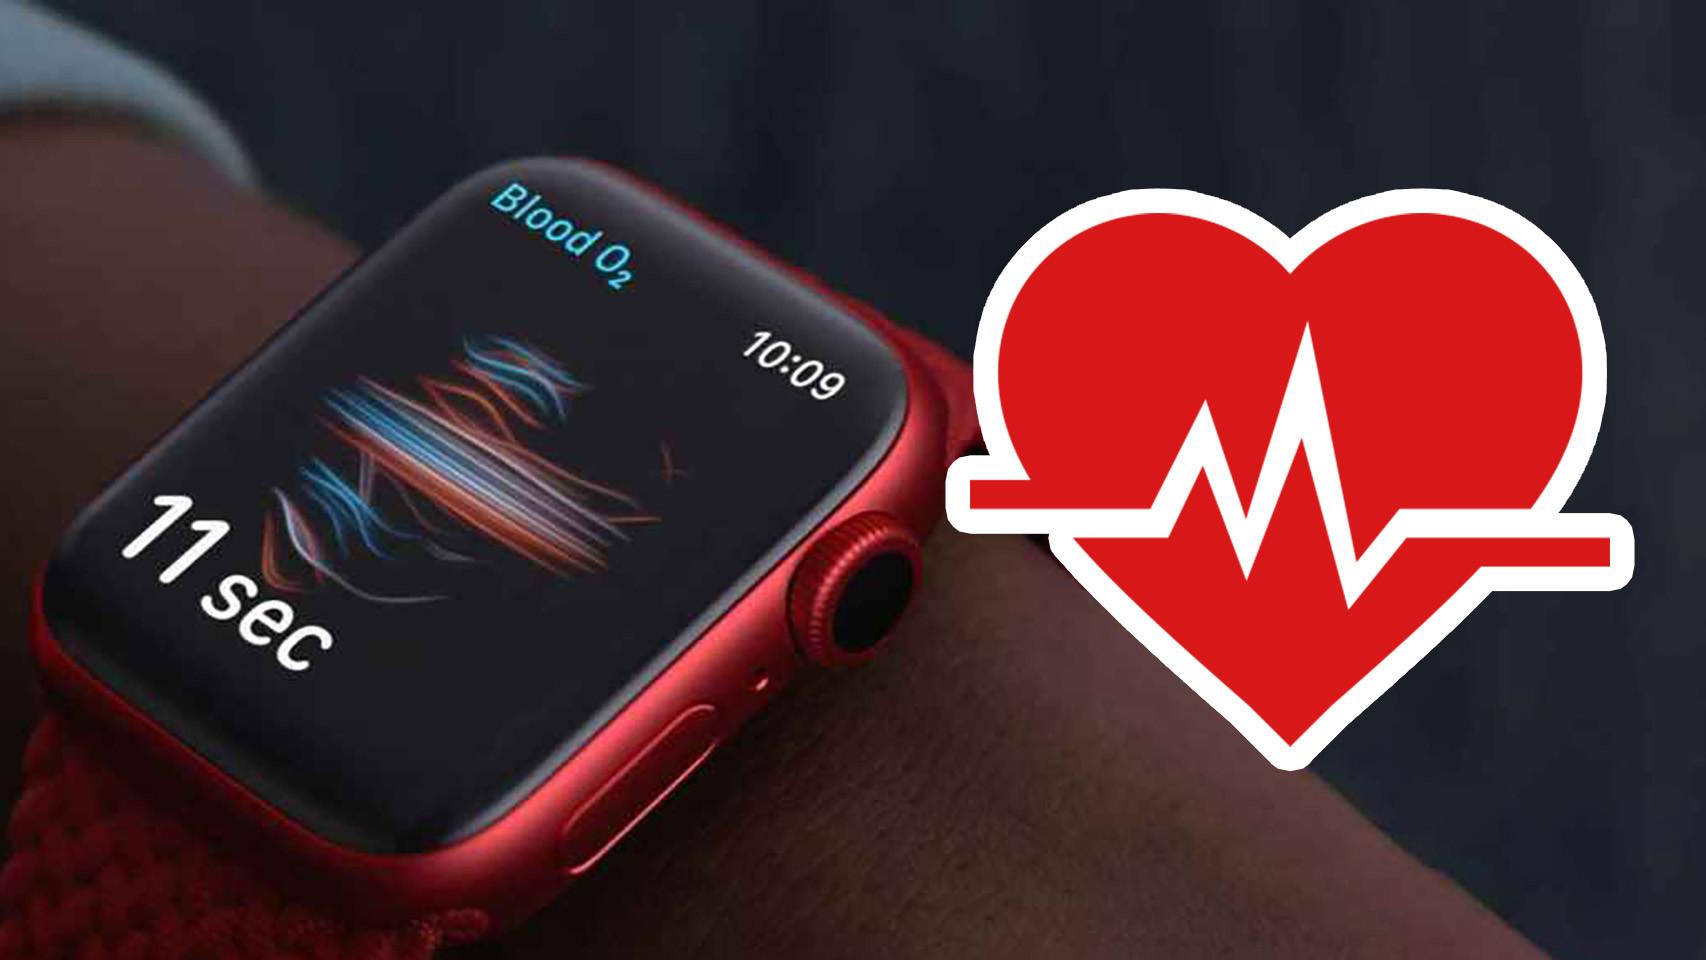 El Apple Watch mide el oxígeno en sangre tan bien como un dispositivo  médico, según un estudio